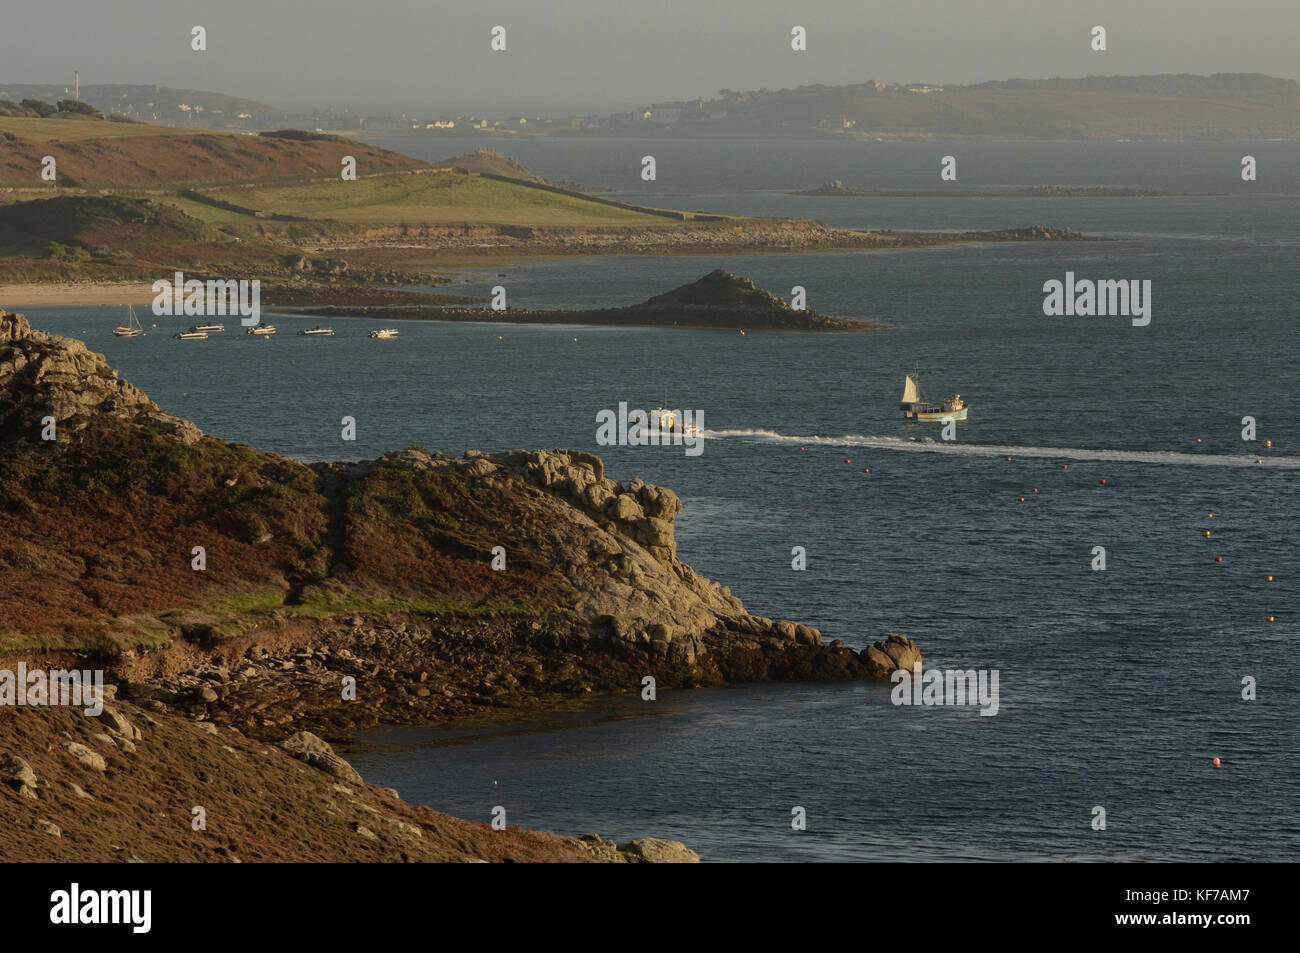 Inter-Island Fähre nähert sich tresco Hafen., Isles of Scilly, Cornwall, England, Großbritannien Stockfoto